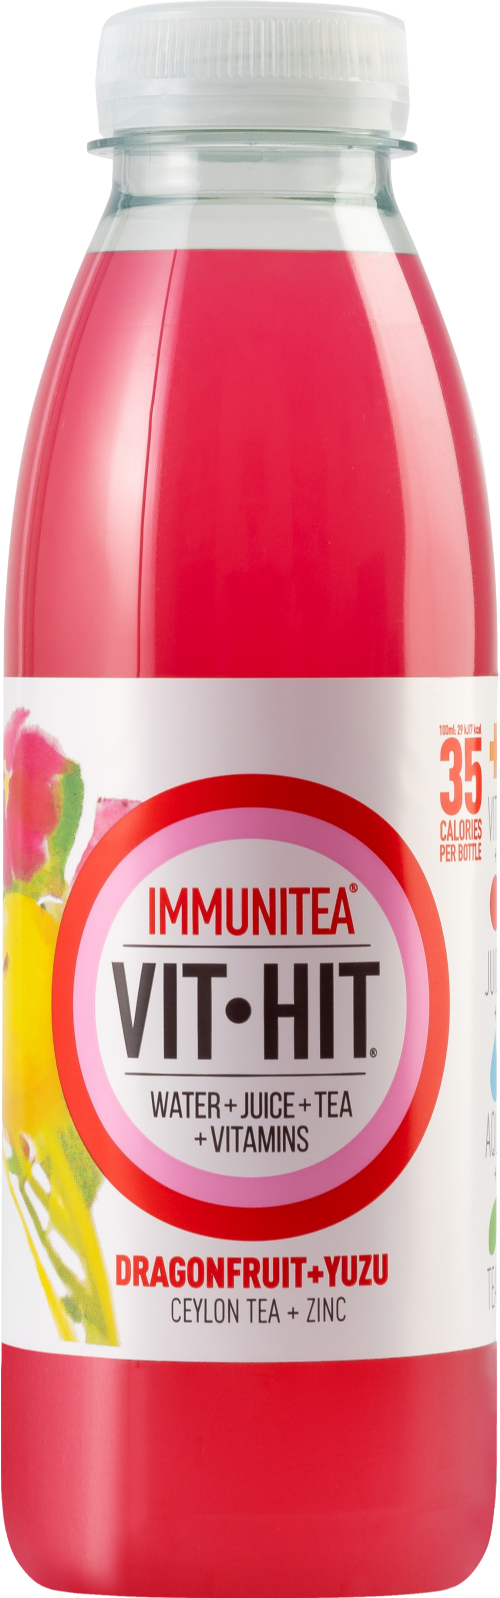 VITHIT Immunitea - Dragonfruit & Yuzu 500ml